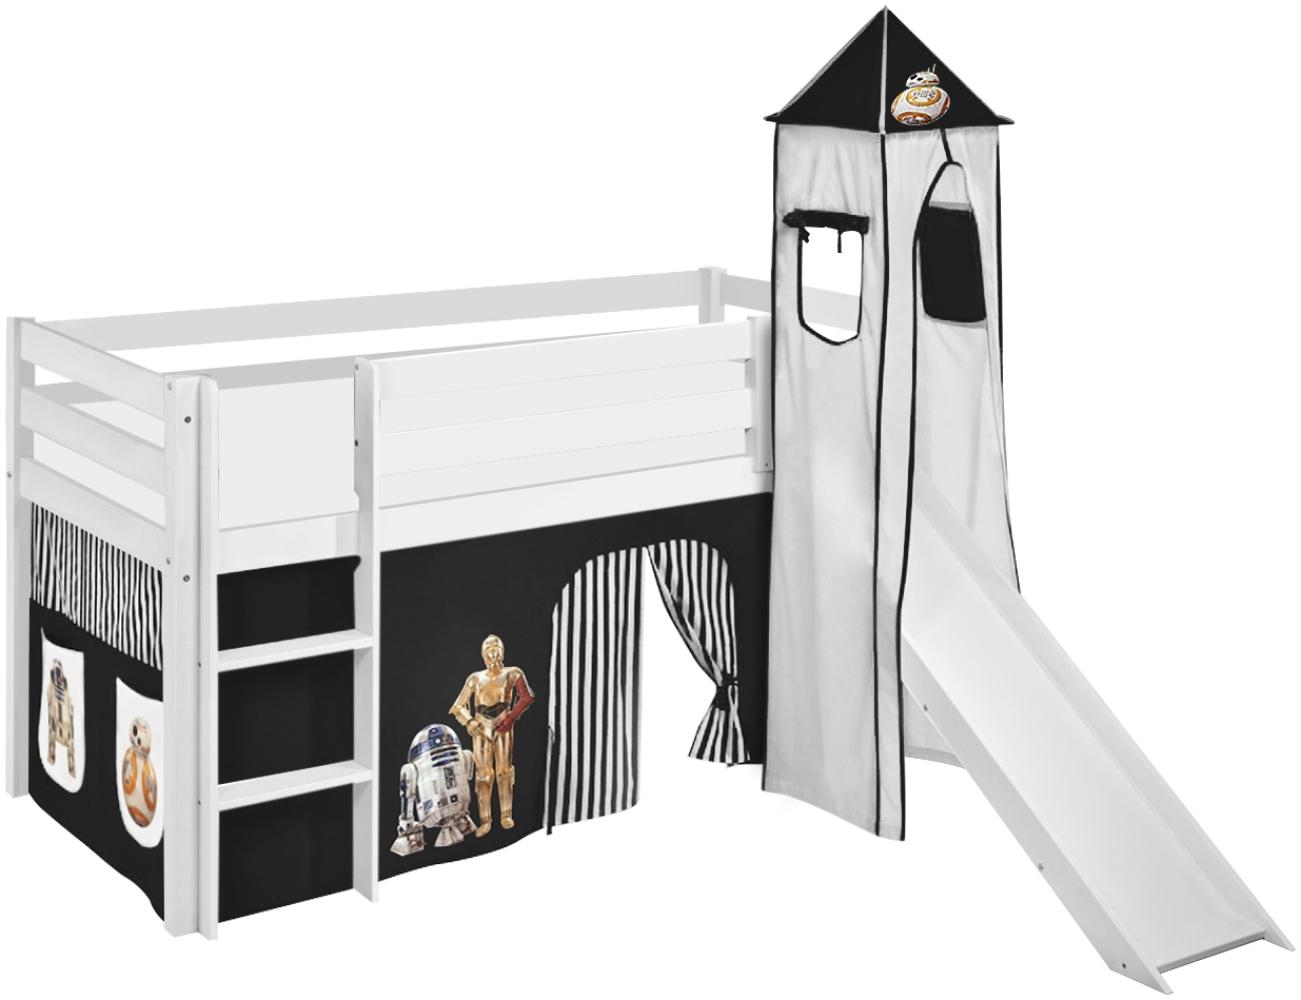 Lilokids 'Jelle' Spielbett 90 x 190 cm, Star Wars Schwarz, Kiefer massiv, mit Turm, Rutsche und Vorhang Bild 1